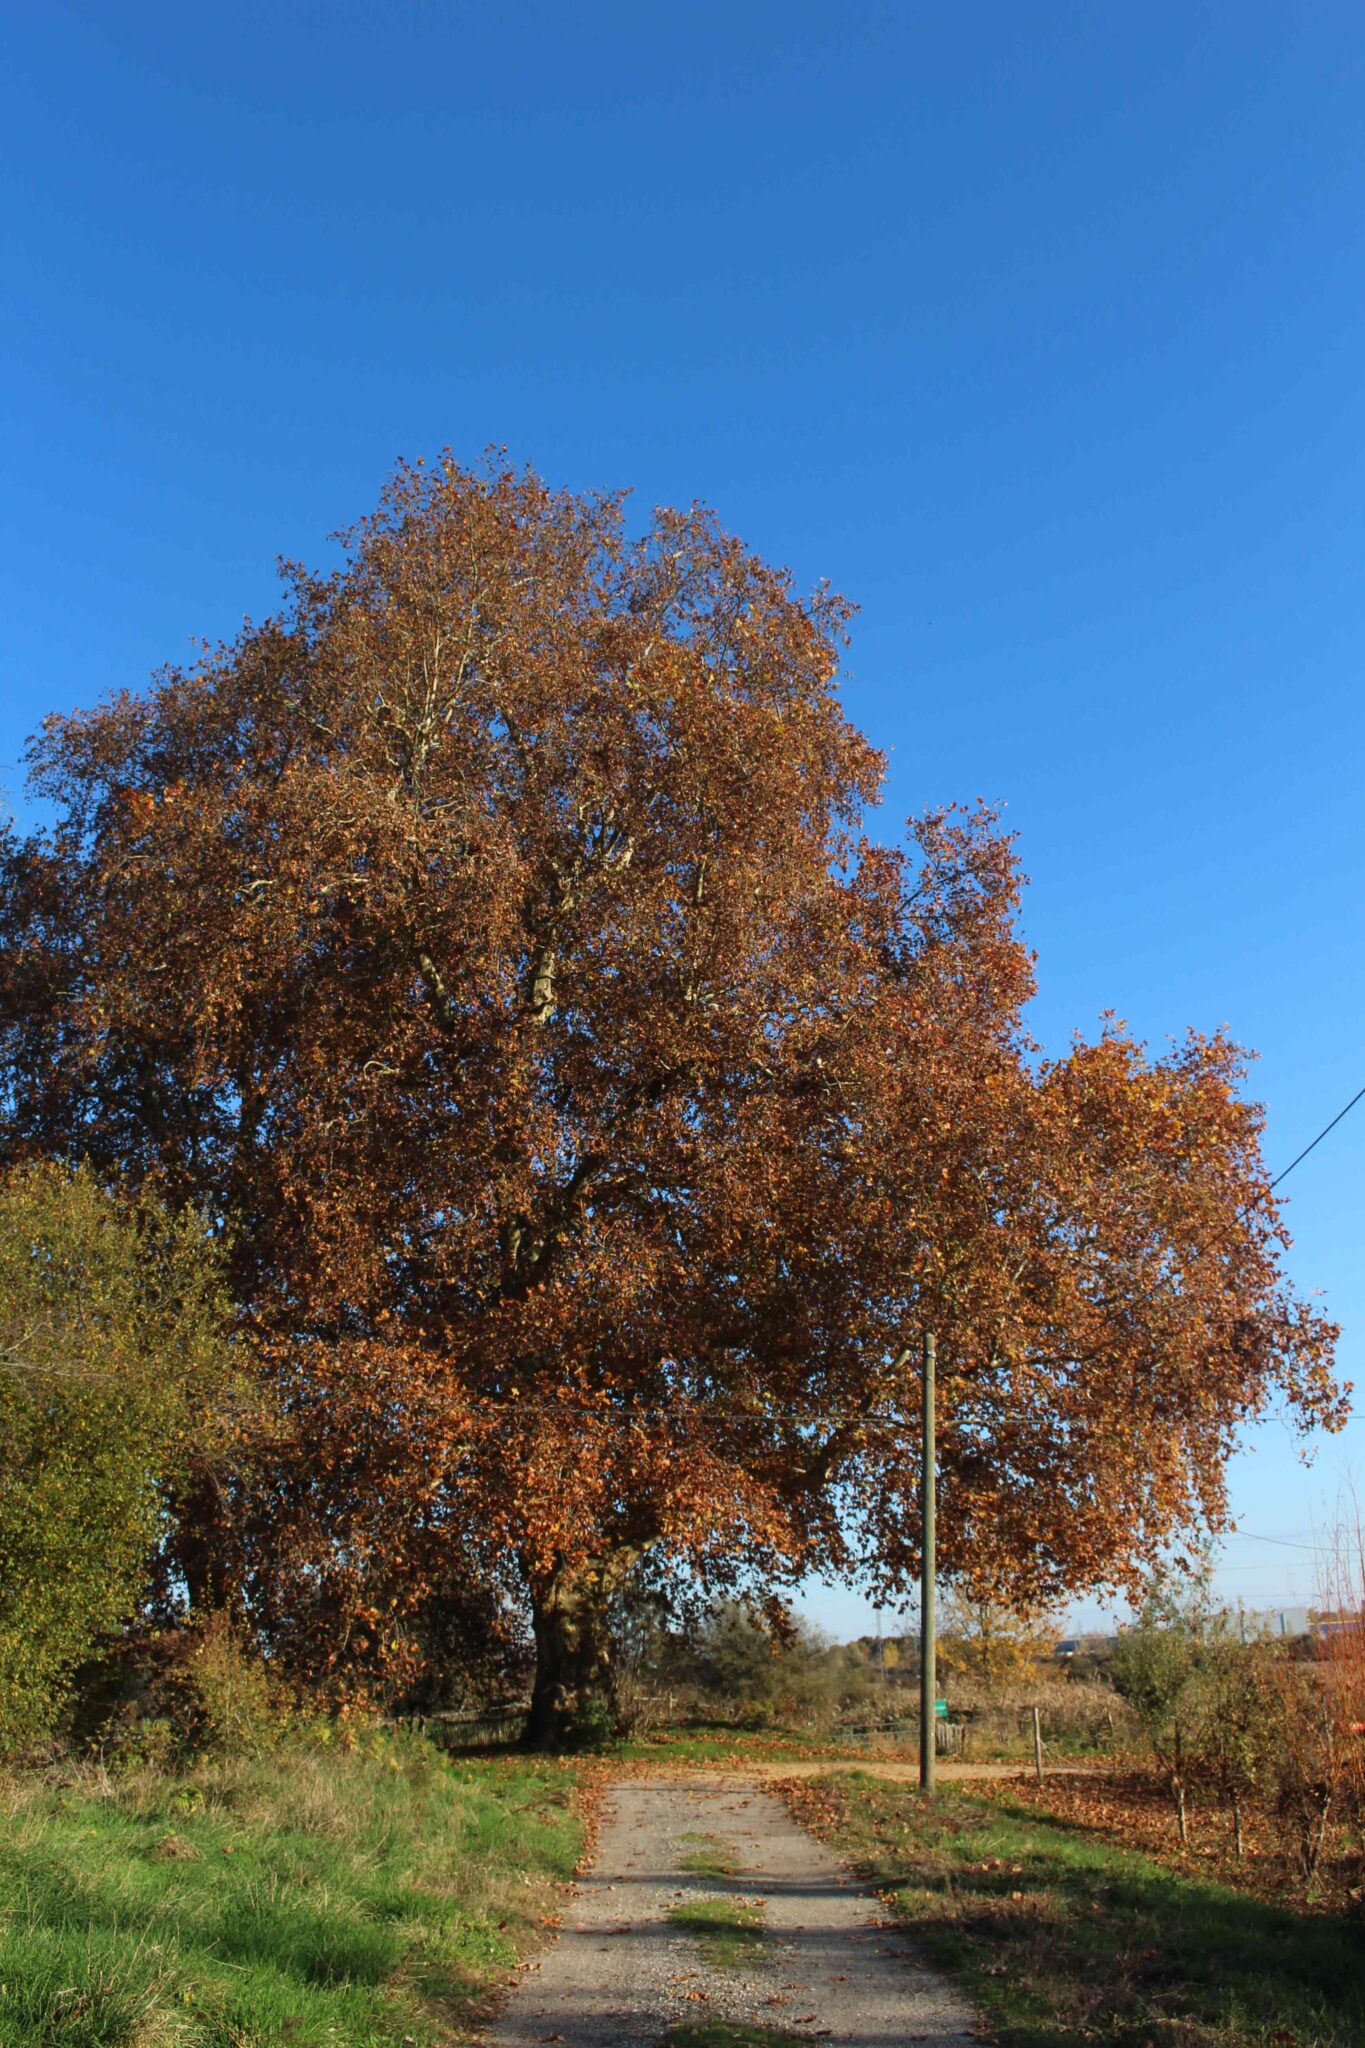 Le chêne est une espèce dite “fondatrice”, elle concentre sur elle et autour d’elle un grand nombre d’interactions avec l’écosystème local. On estime à 1500 le nombre d’espèces qui sont directement liées à cet arbre, qui est très présent ici dans la réserve des Marais de Bruges.